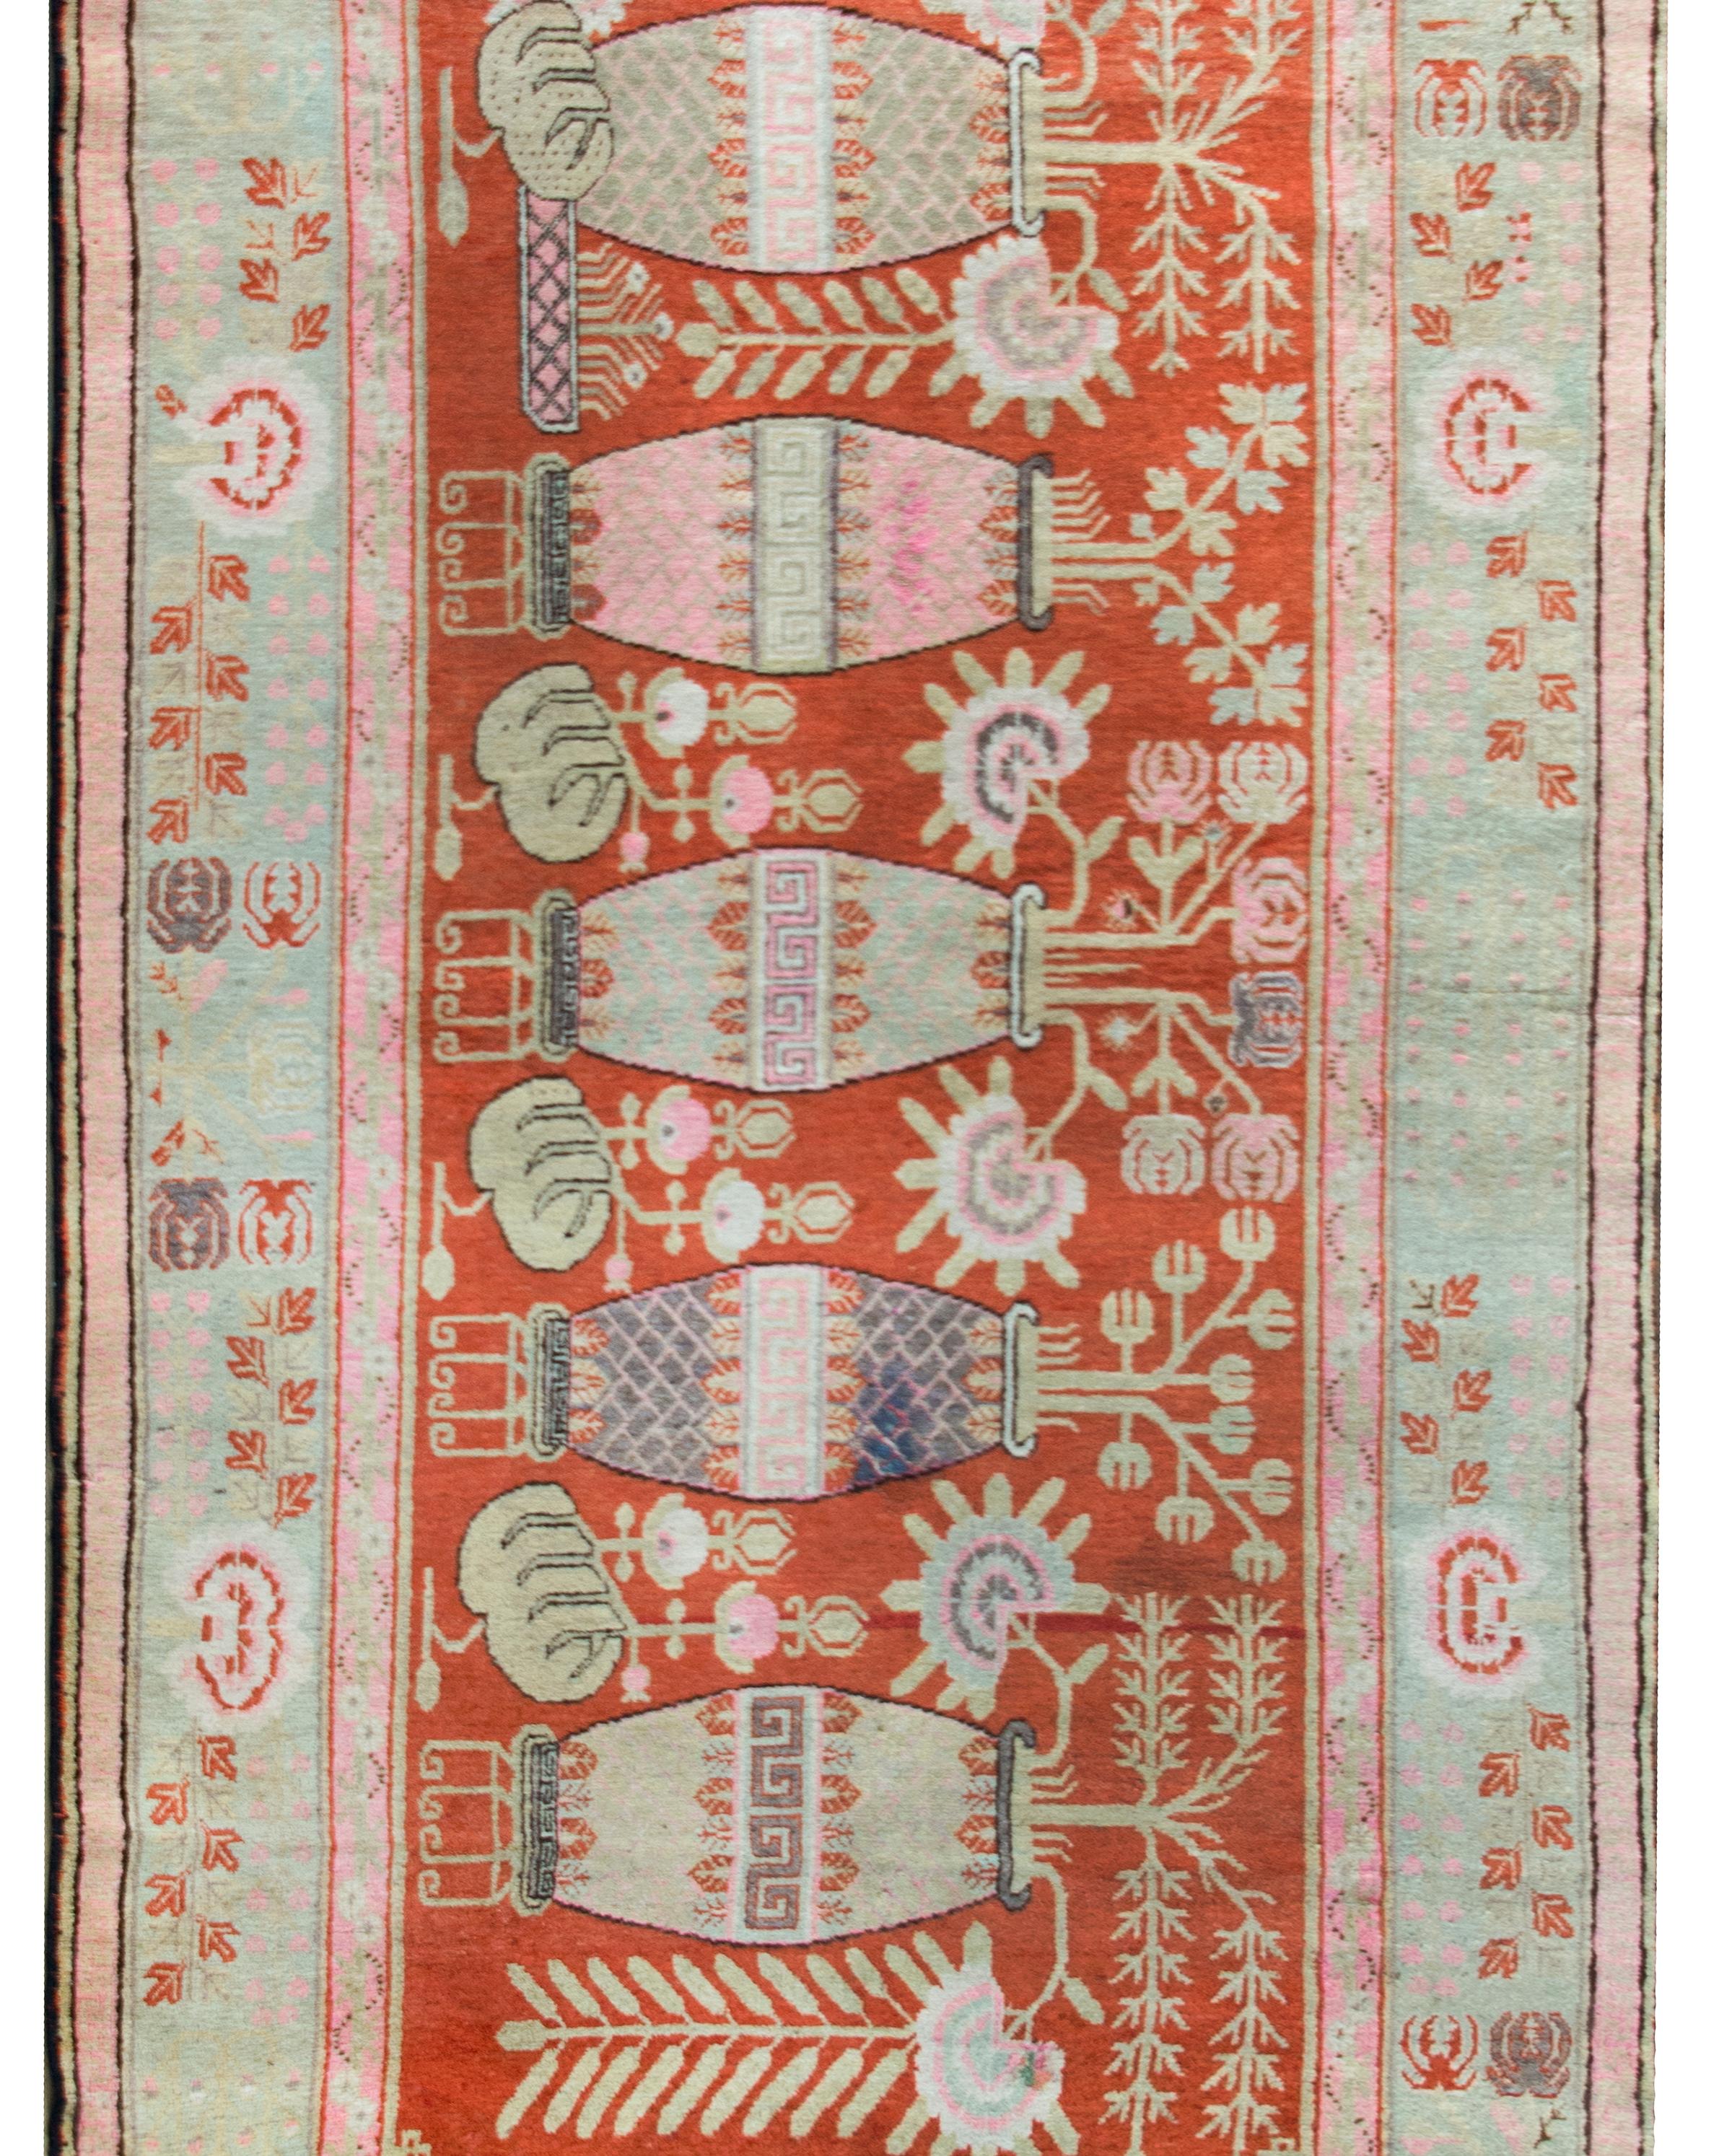 Ein prächtiger zentralasiatischer Khotan-Teppich aus dem frühen 20. Jahrhundert mit fünf großen Vasen, die jeweils mit Pfingstrosen und Chrysanthemen sowie weiteren glücksverheißenden Blumen wie Lotos und Buddhas Händen bepflanzt sind.  Die breite